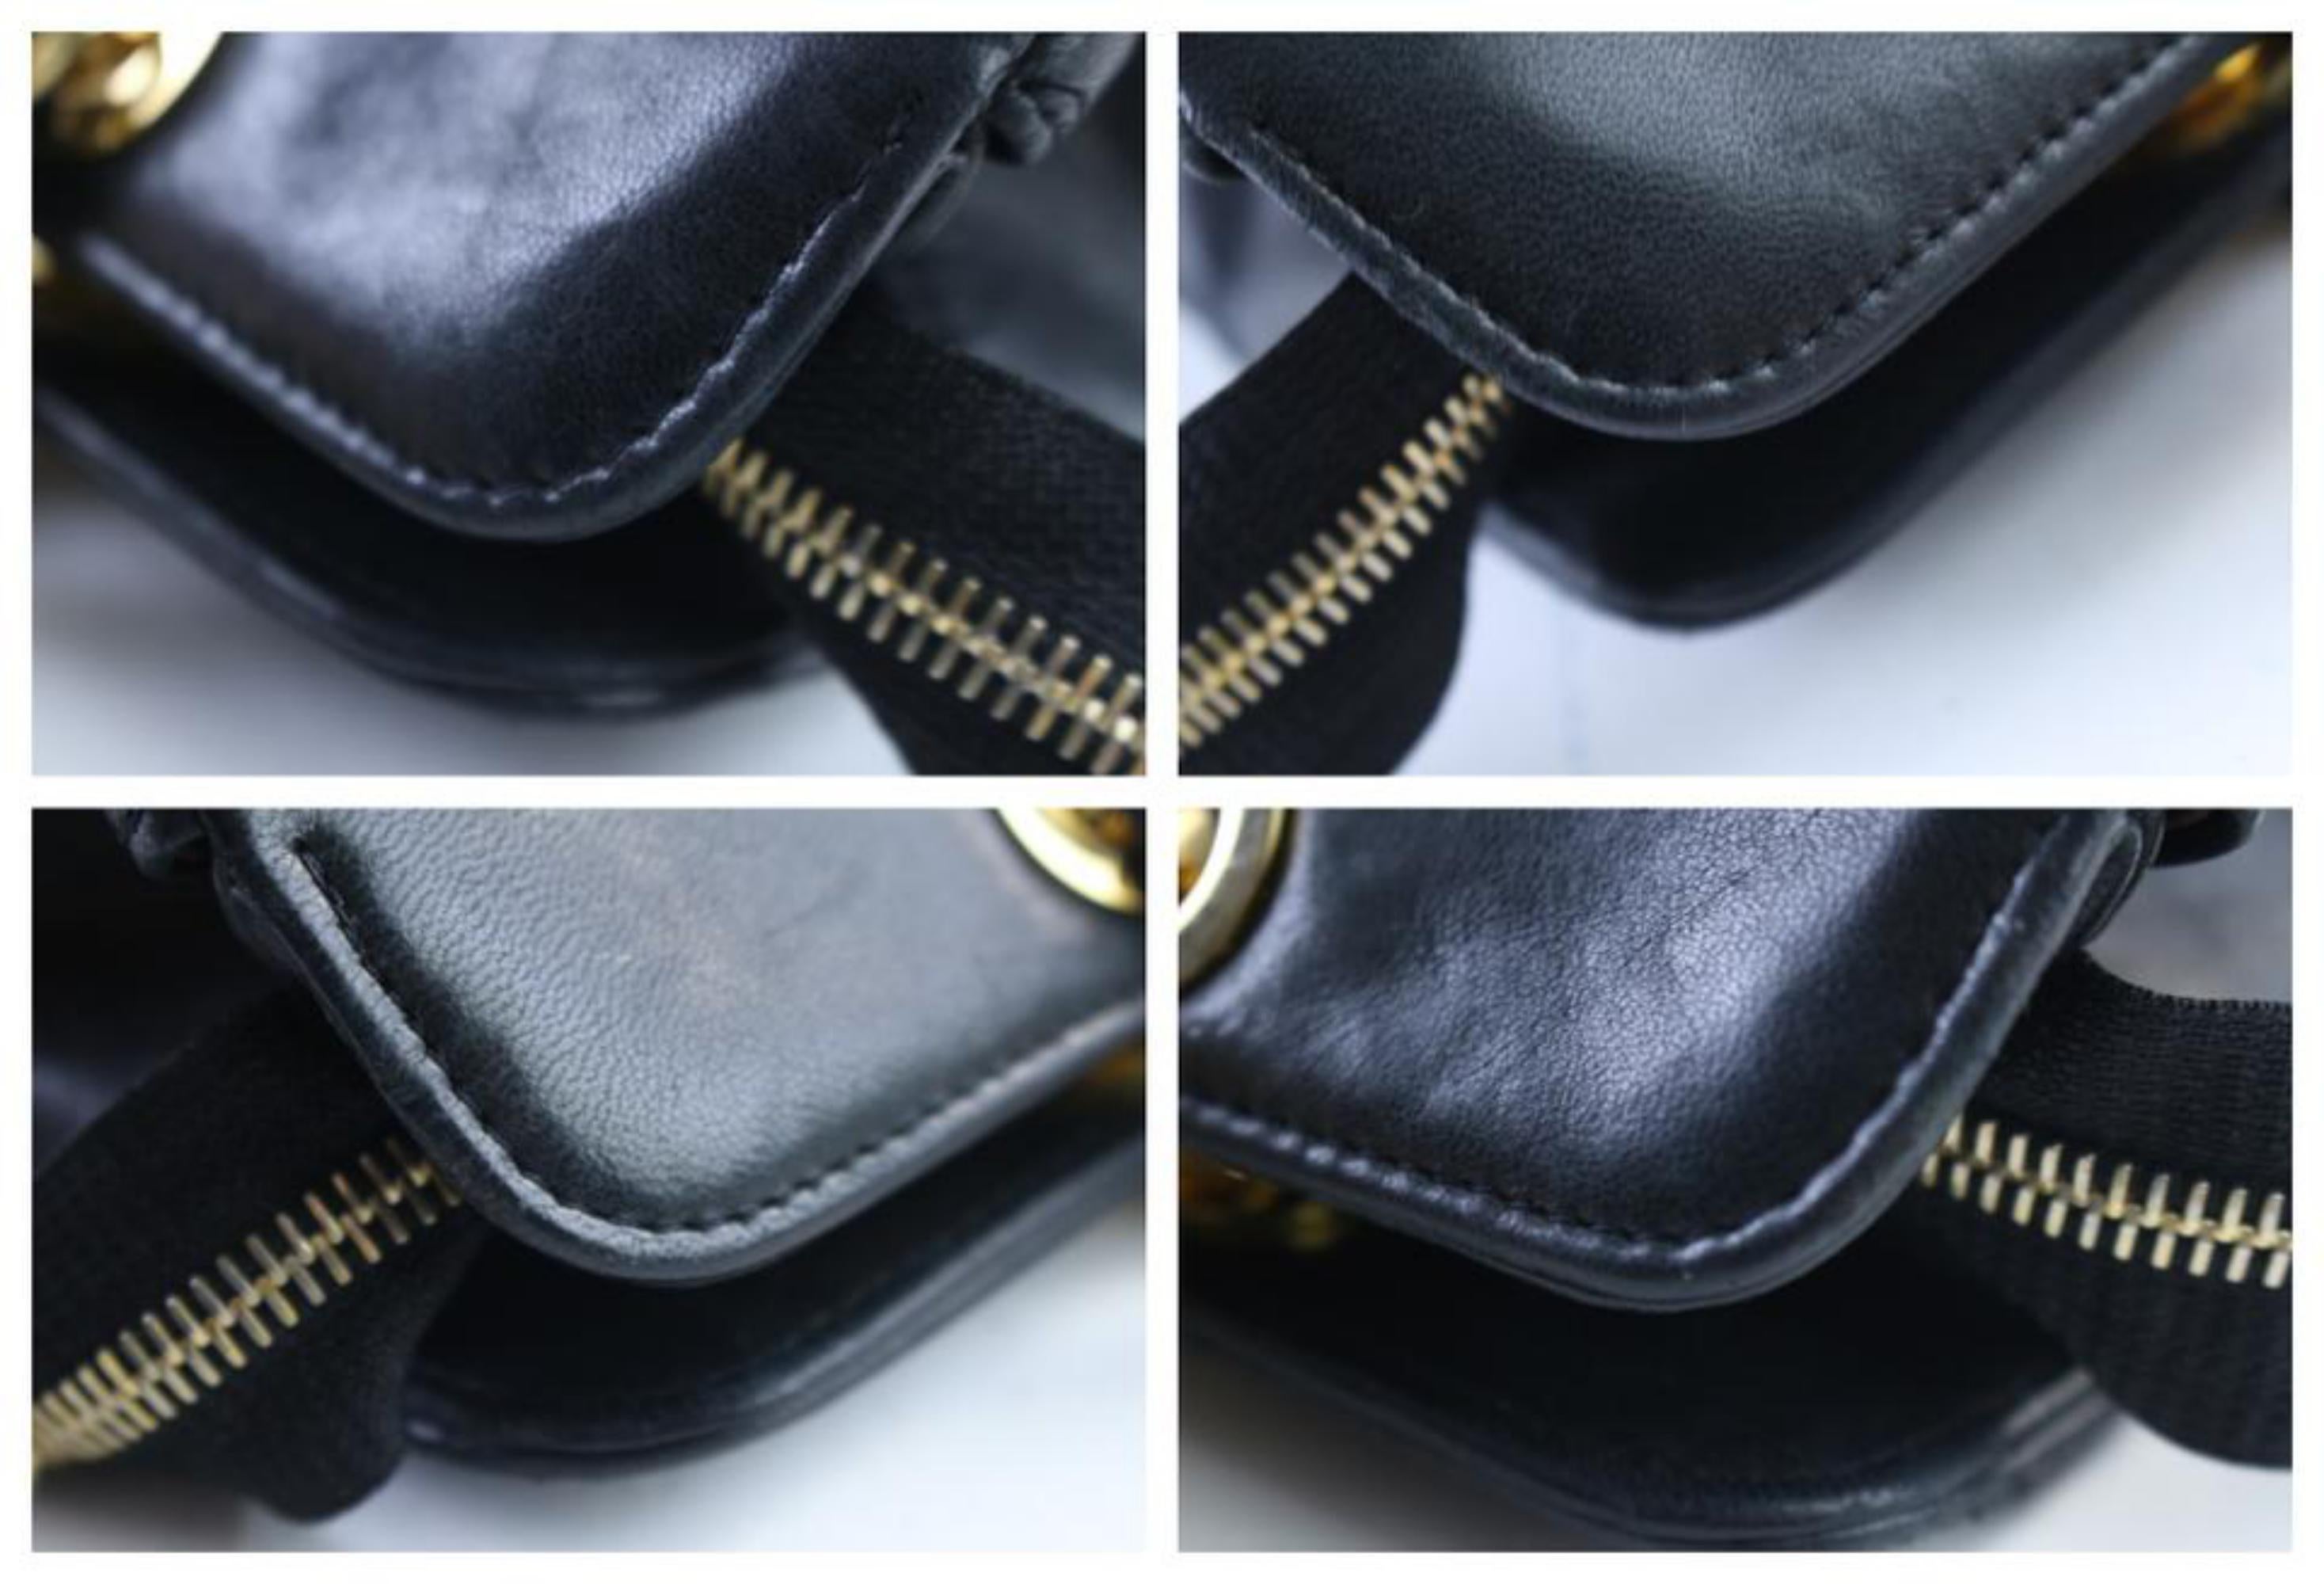 Chanel Medallion Chain Tote 14cr0515 Black Leather Shoulder Bag For Sale 2